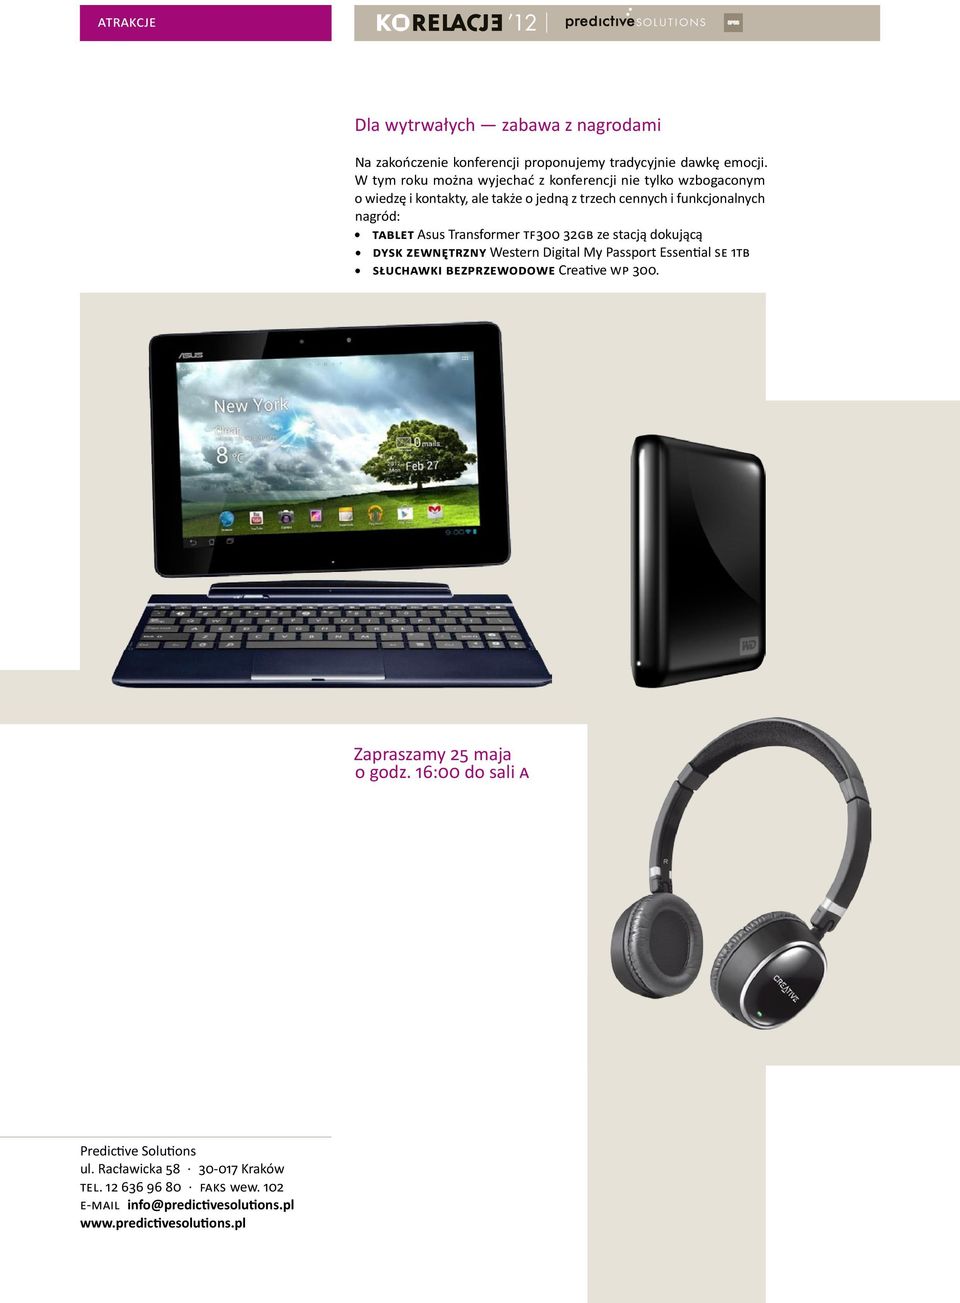 tablet Asus Transformer TF300 32GB ze stacją dokującą z dysk zewnętrzny Western Digital My Passport Essential SE 1TB z słuchawki bezprzewodowe